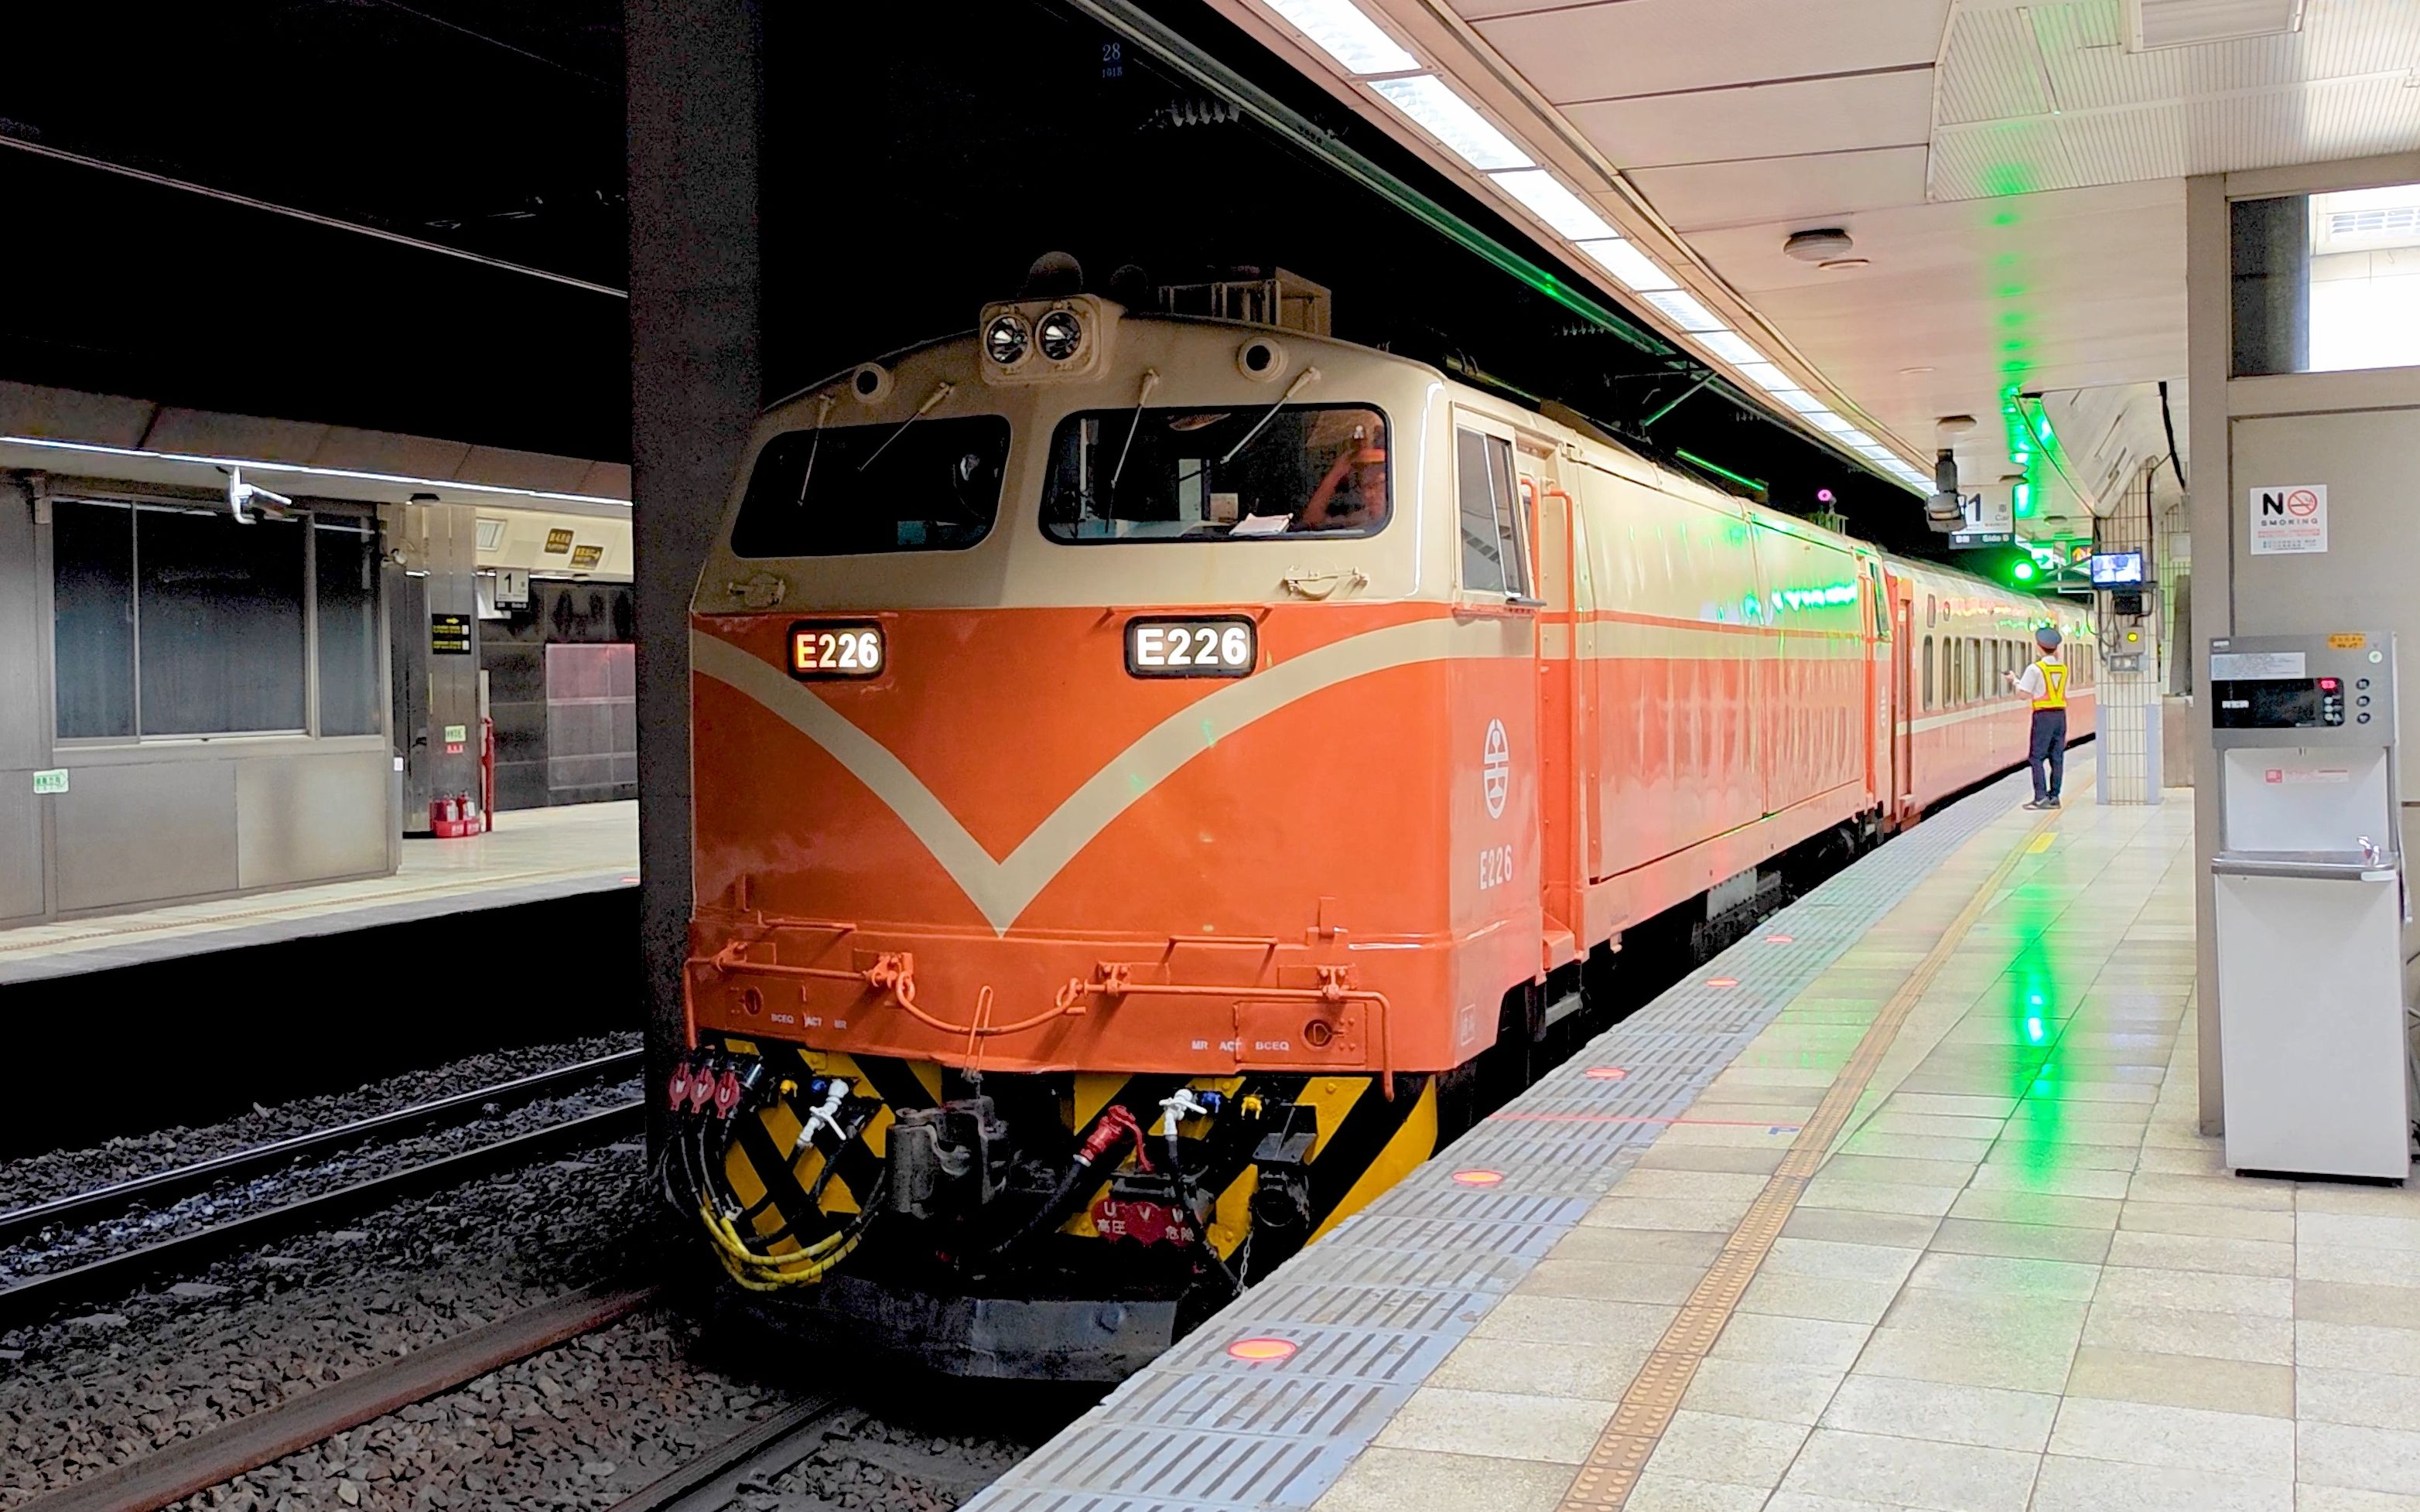 台铁e400型电力机车担当莒光号列车台北发车,台湾越来越少的机辆模式